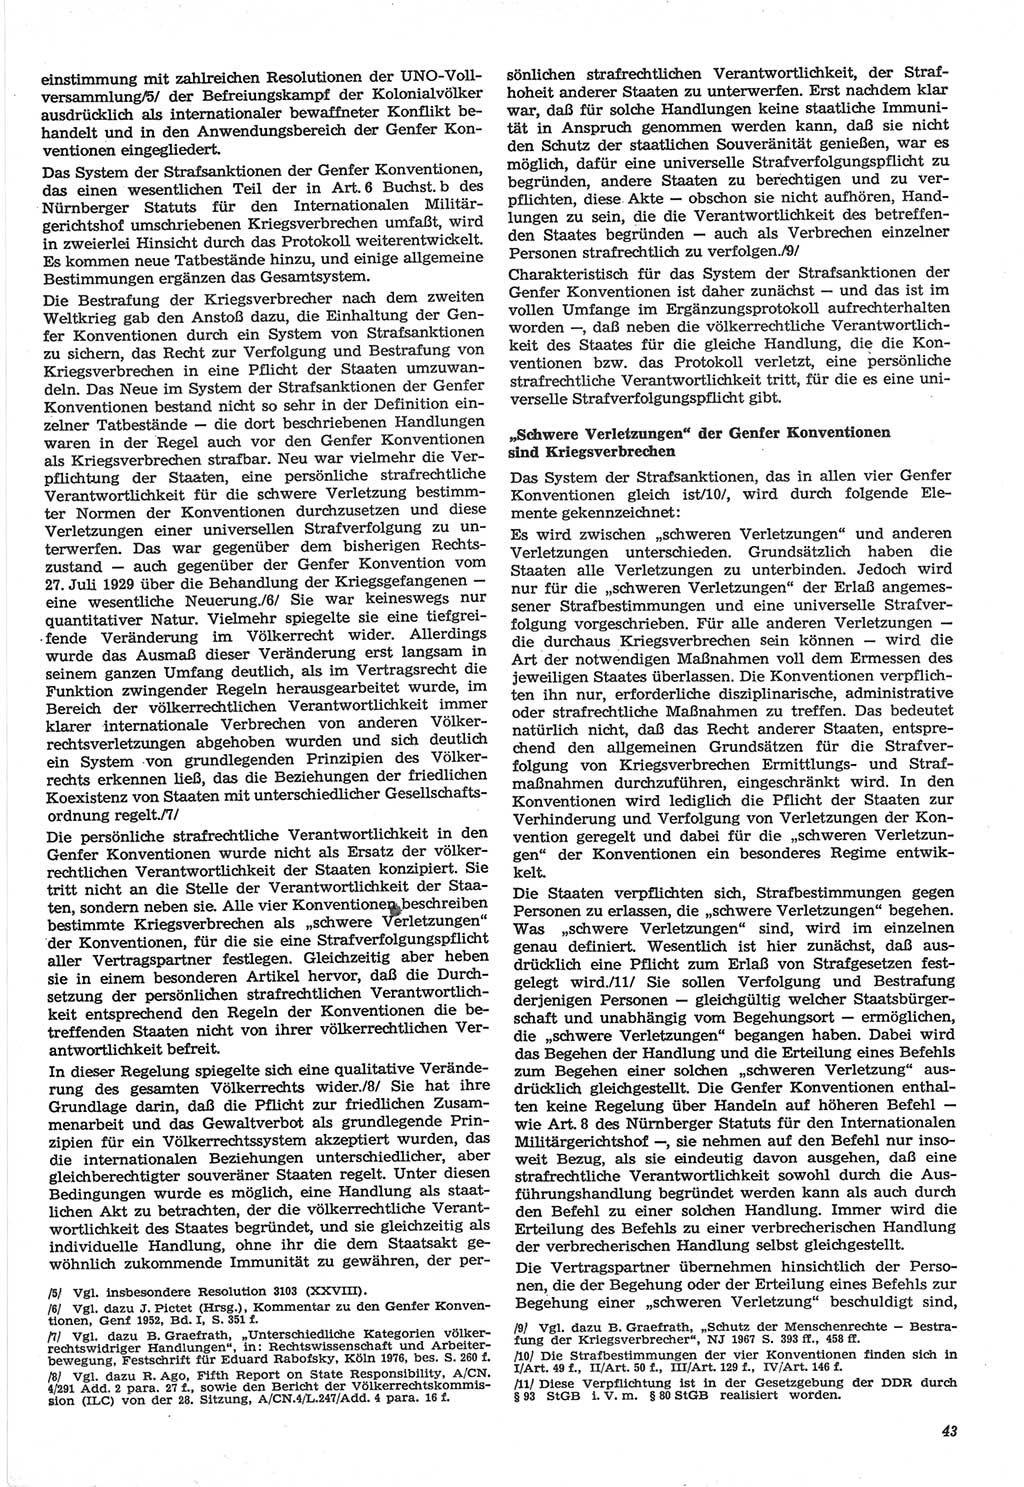 Neue Justiz (NJ), Zeitschrift für Recht und Rechtswissenschaft-Zeitschrift, sozialistisches Recht und Gesetzlichkeit, 31. Jahrgang 1977, Seite 43 (NJ DDR 1977, S. 43)